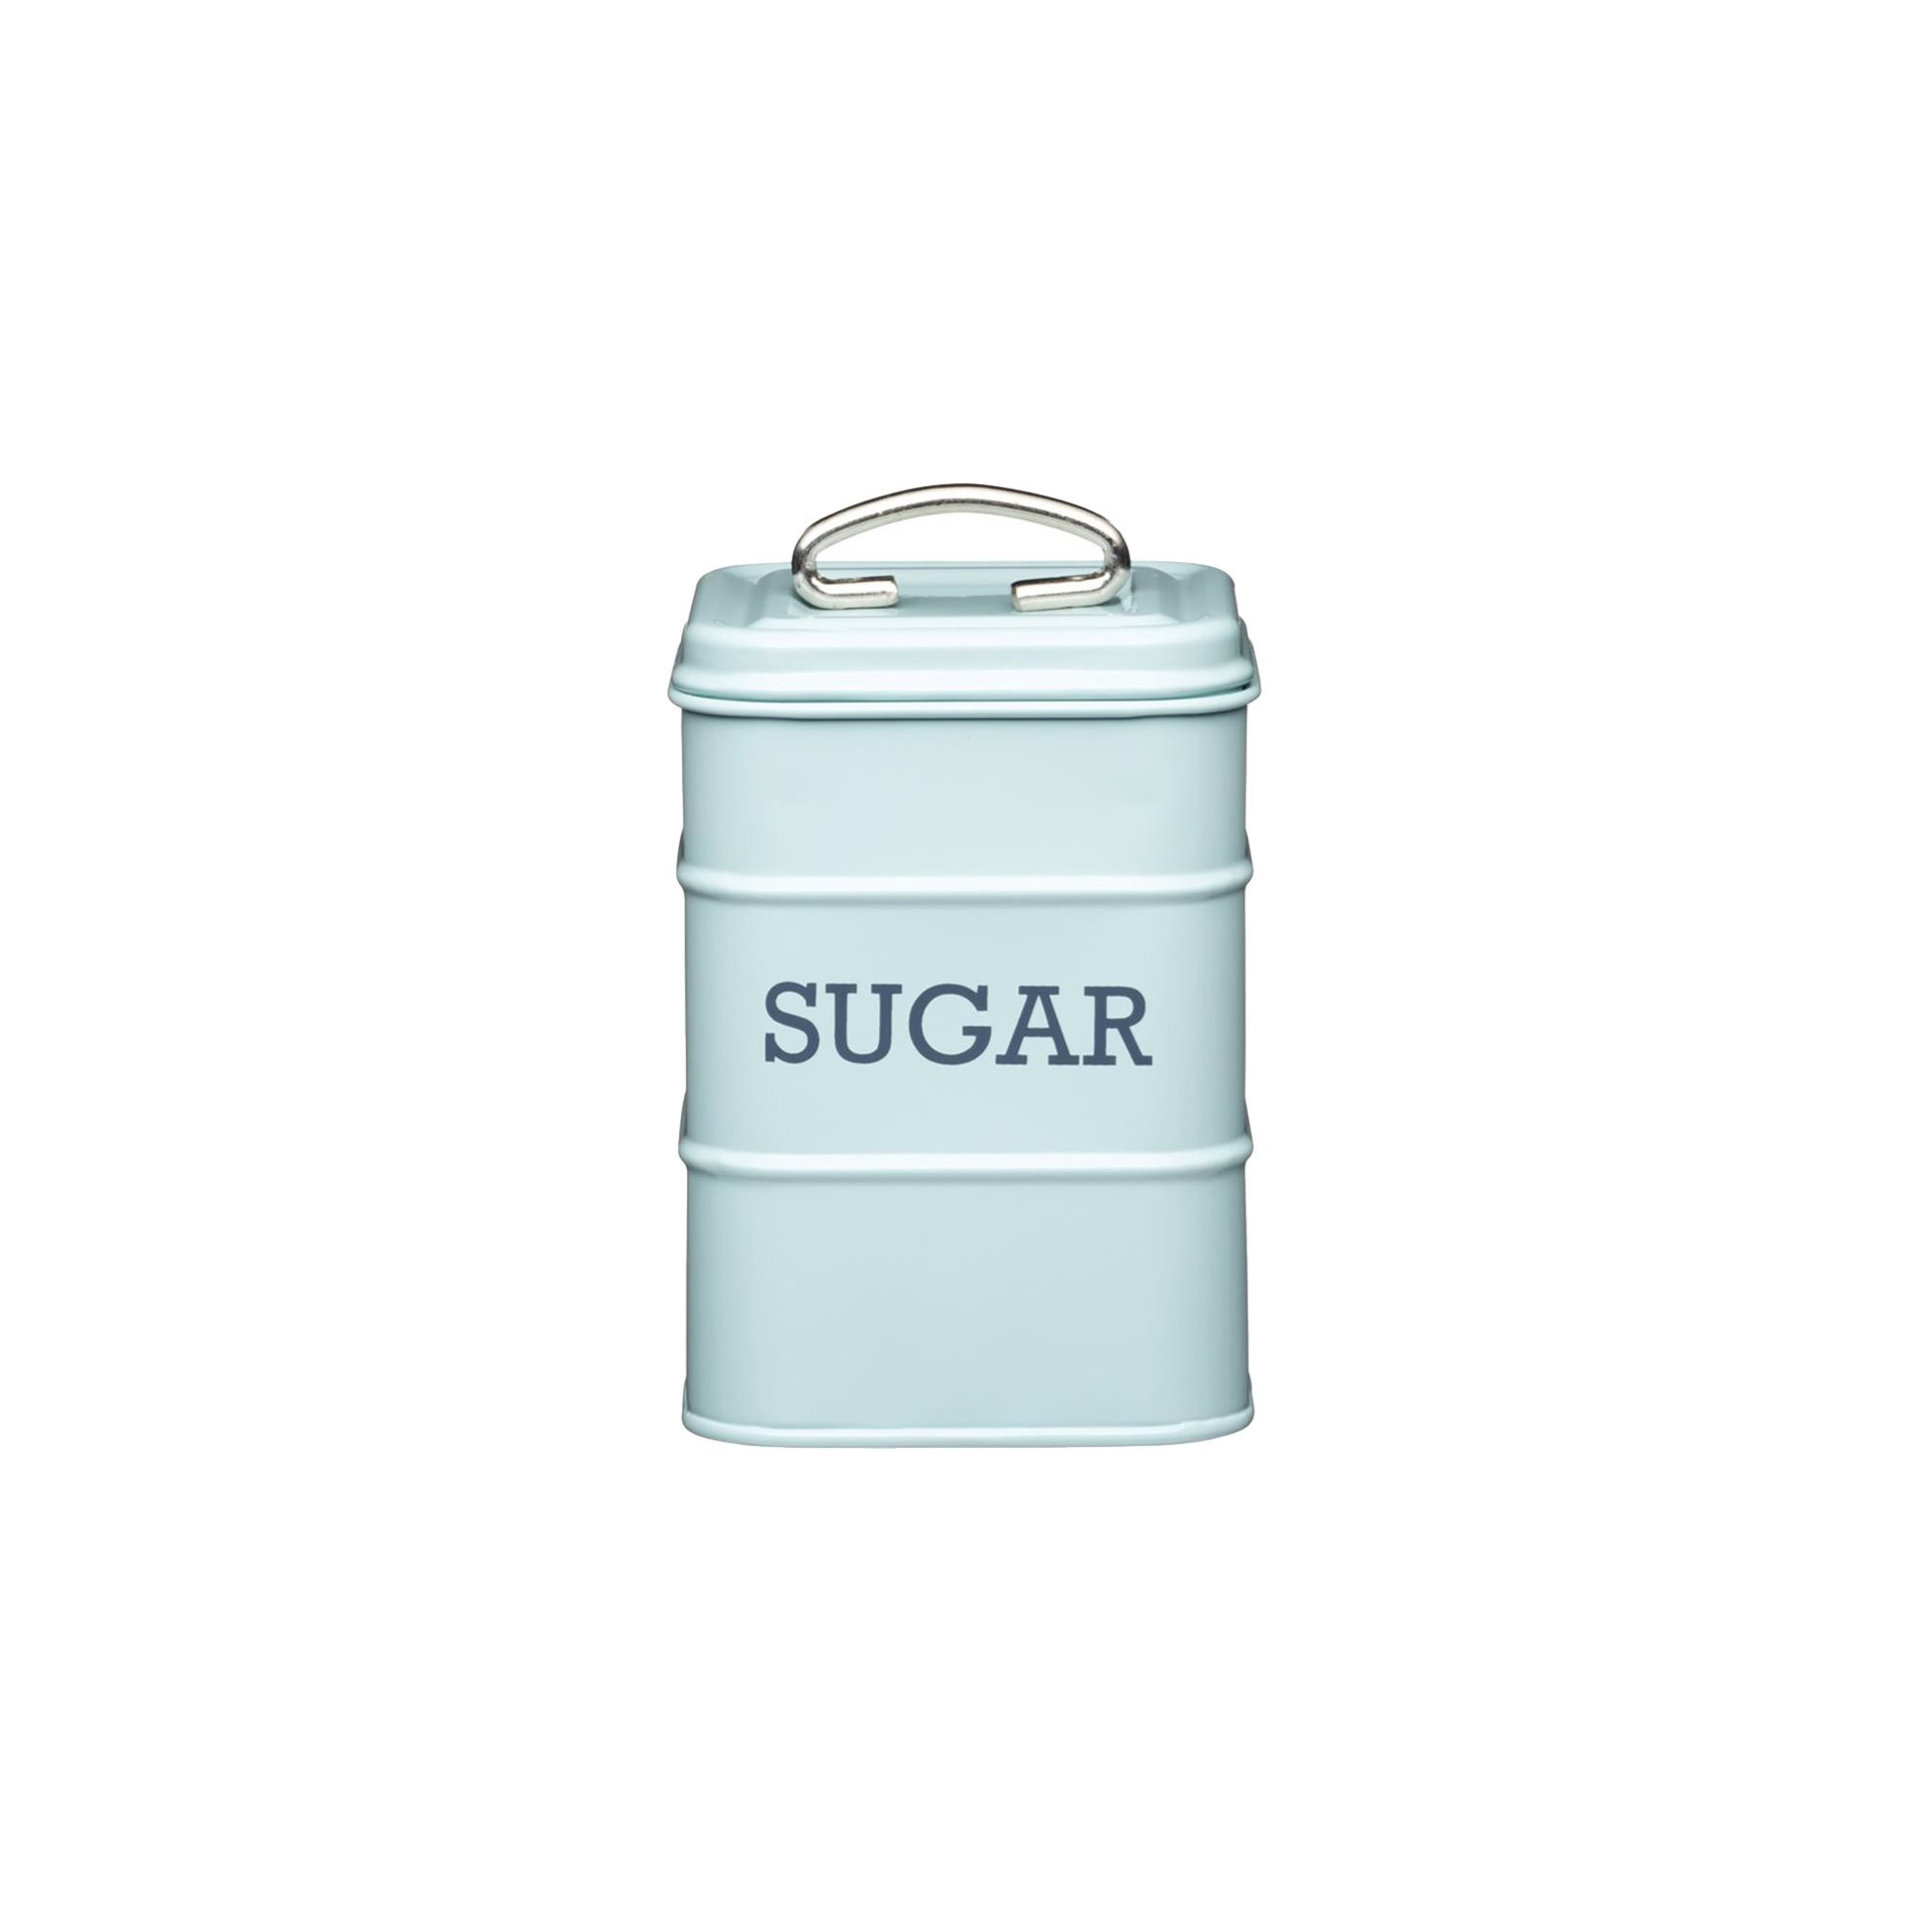 Sugar box, 11 x 11 x 17 cm - by Kitchen Craft